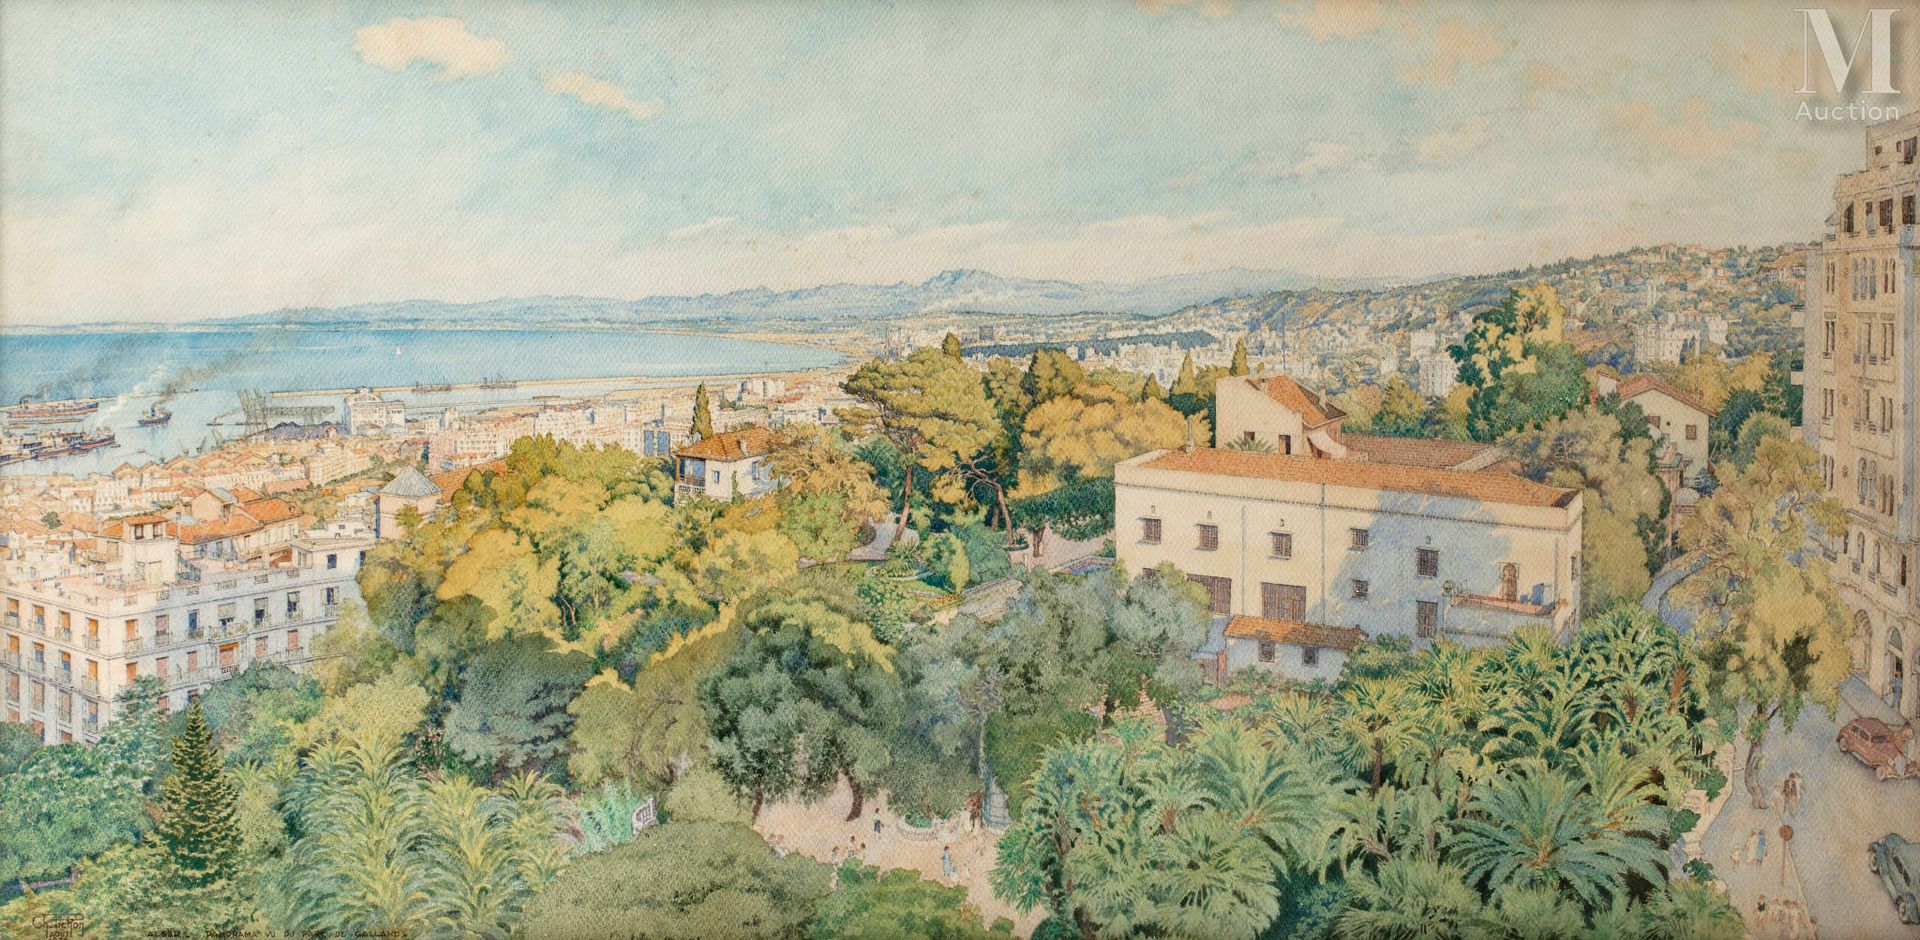 Charles PICHON (1888 - 1957) Panorama von Algier, vom Galland-Park aus.

Charles&hellip;